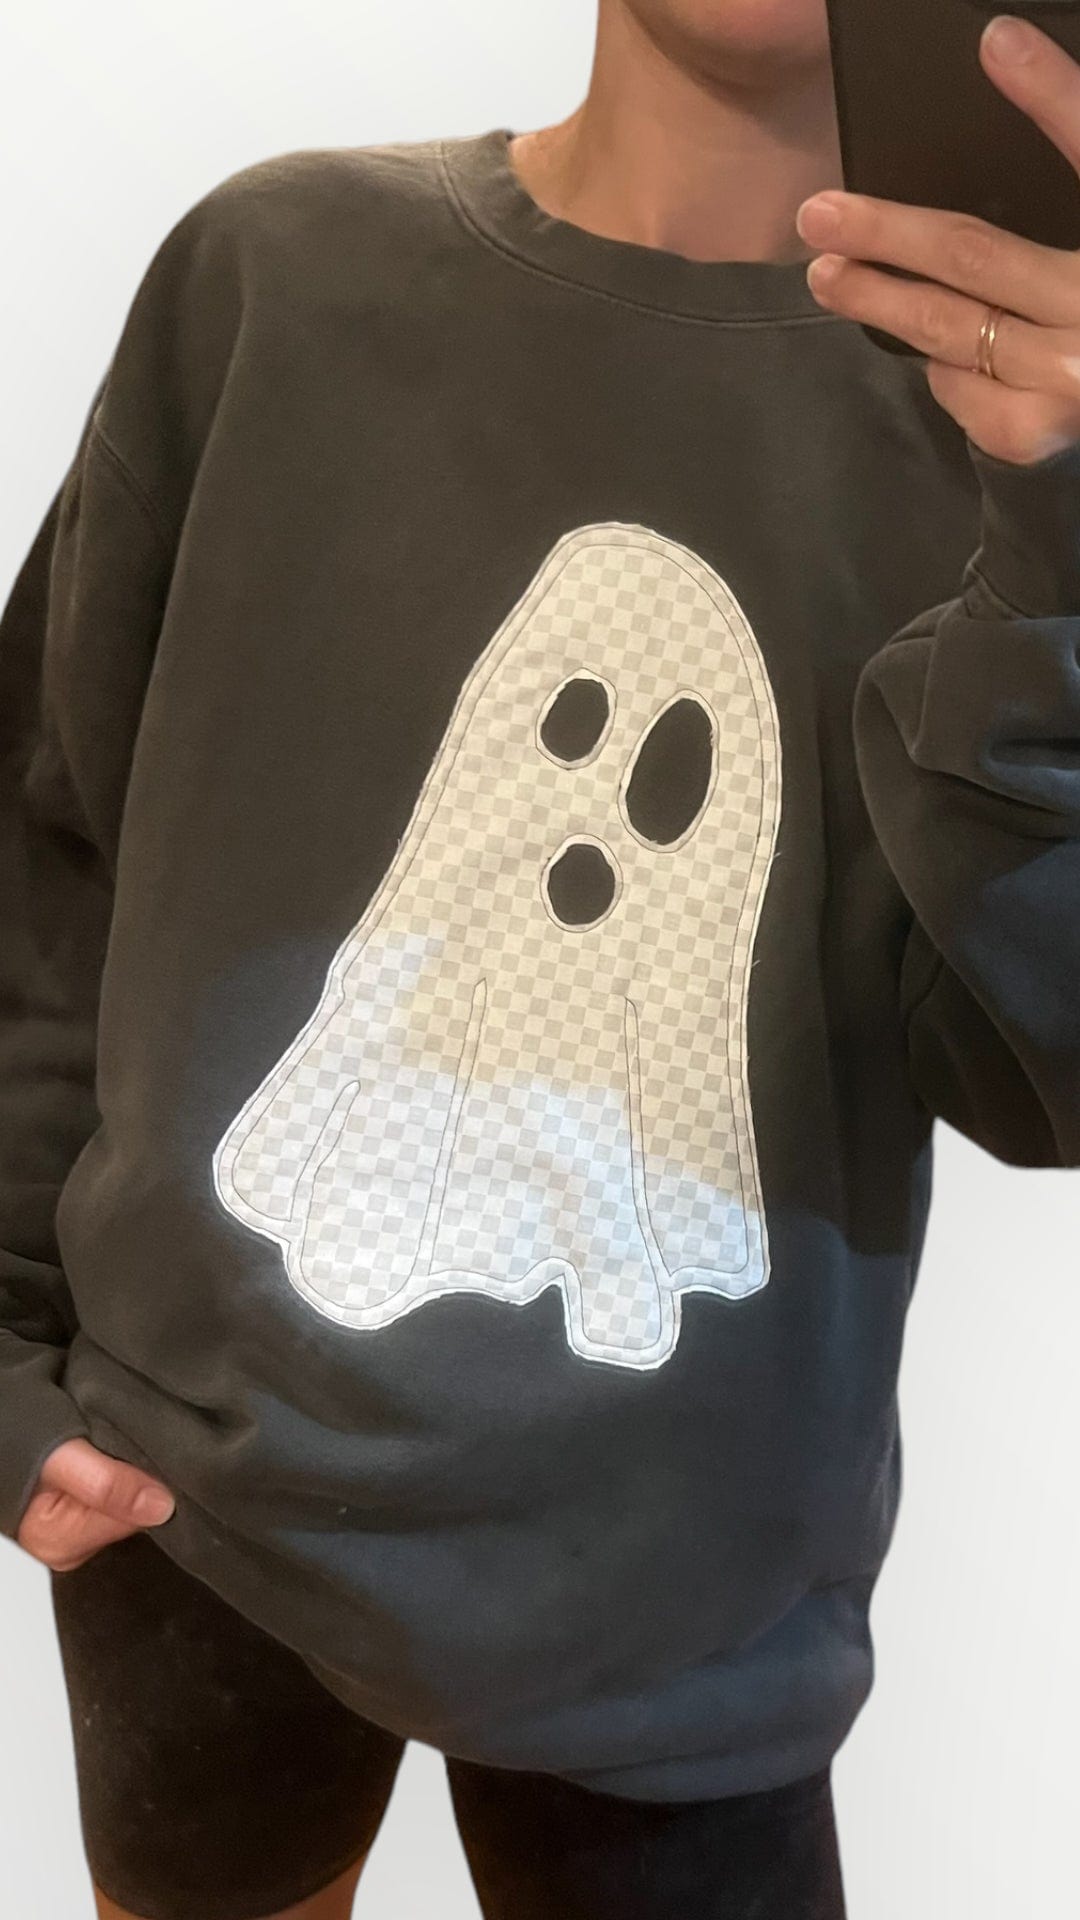 Applique Ghost Sweatshirt